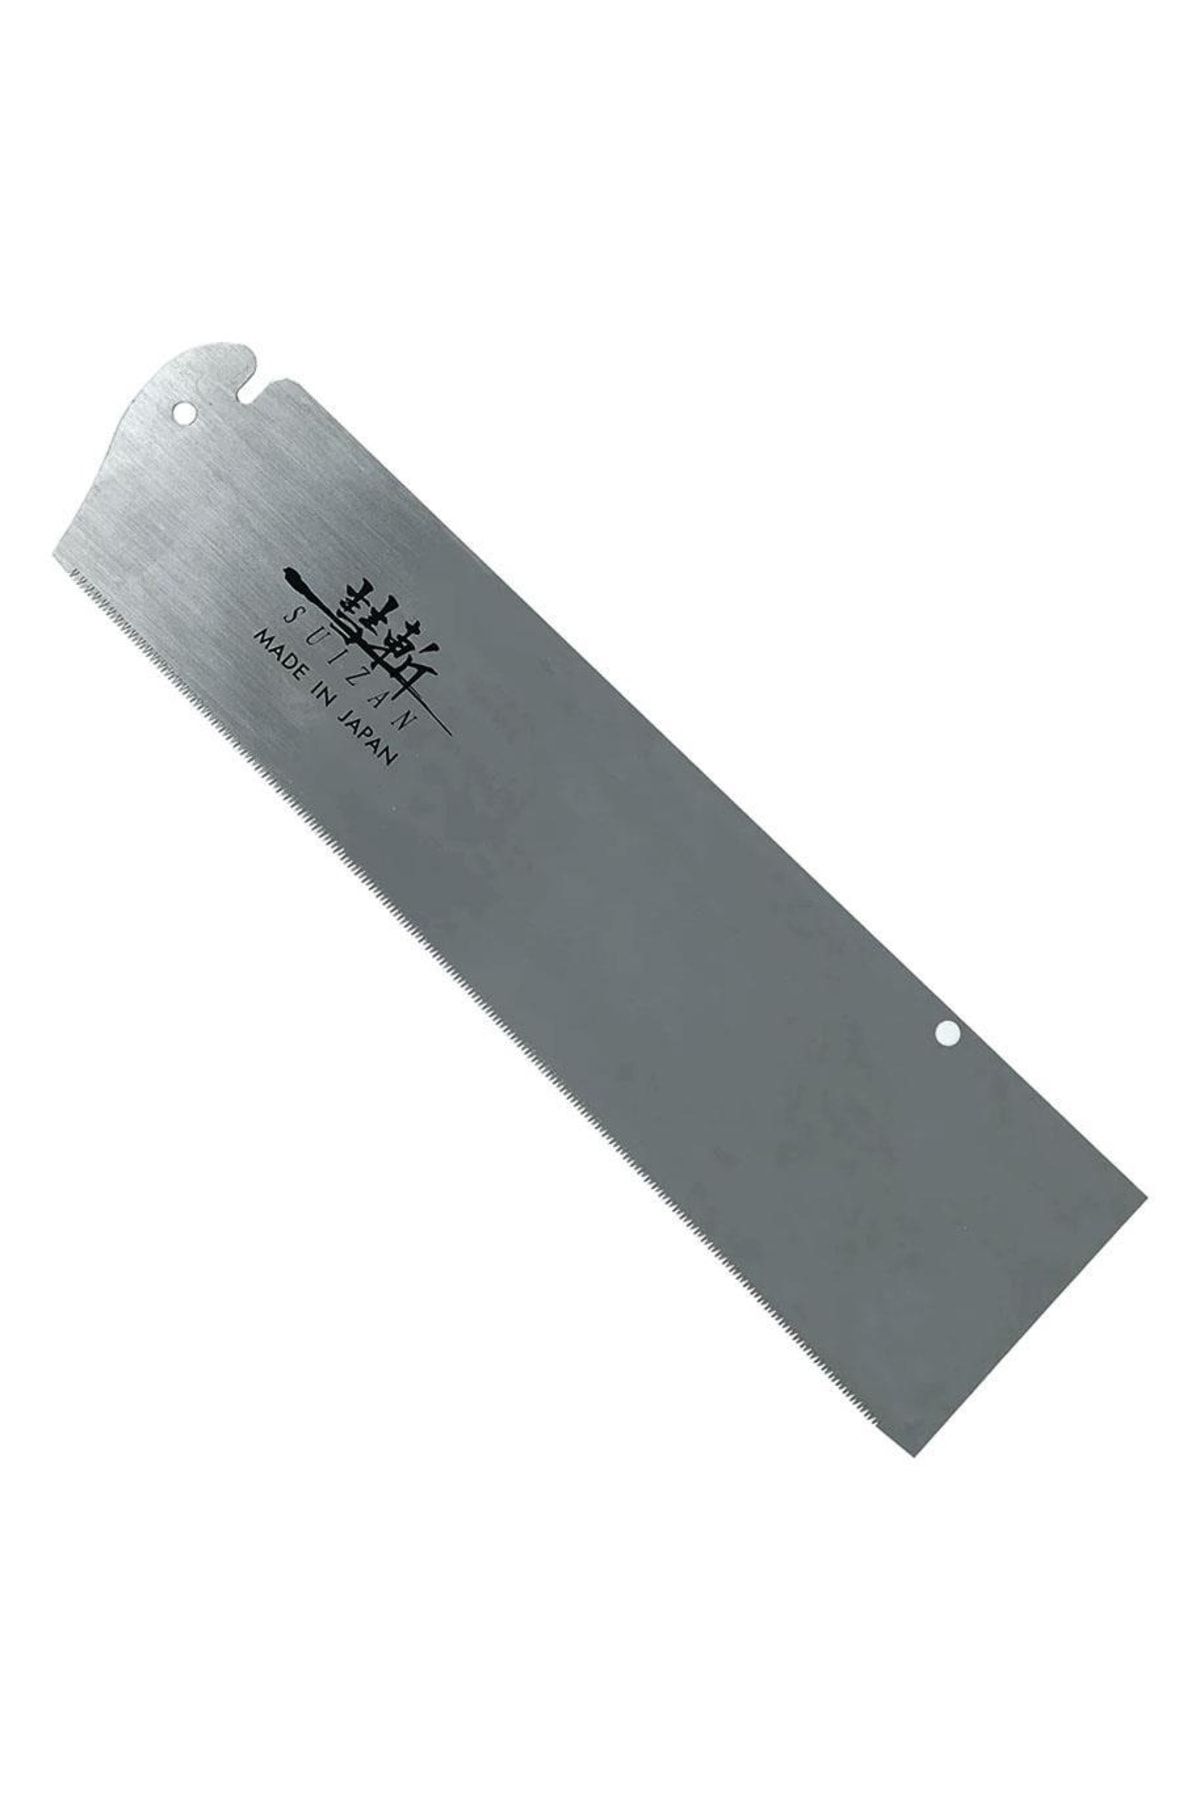 Suizan Dozuki Dovetail Katlanır Japon Testeresi 24cm Yedek Bıçak